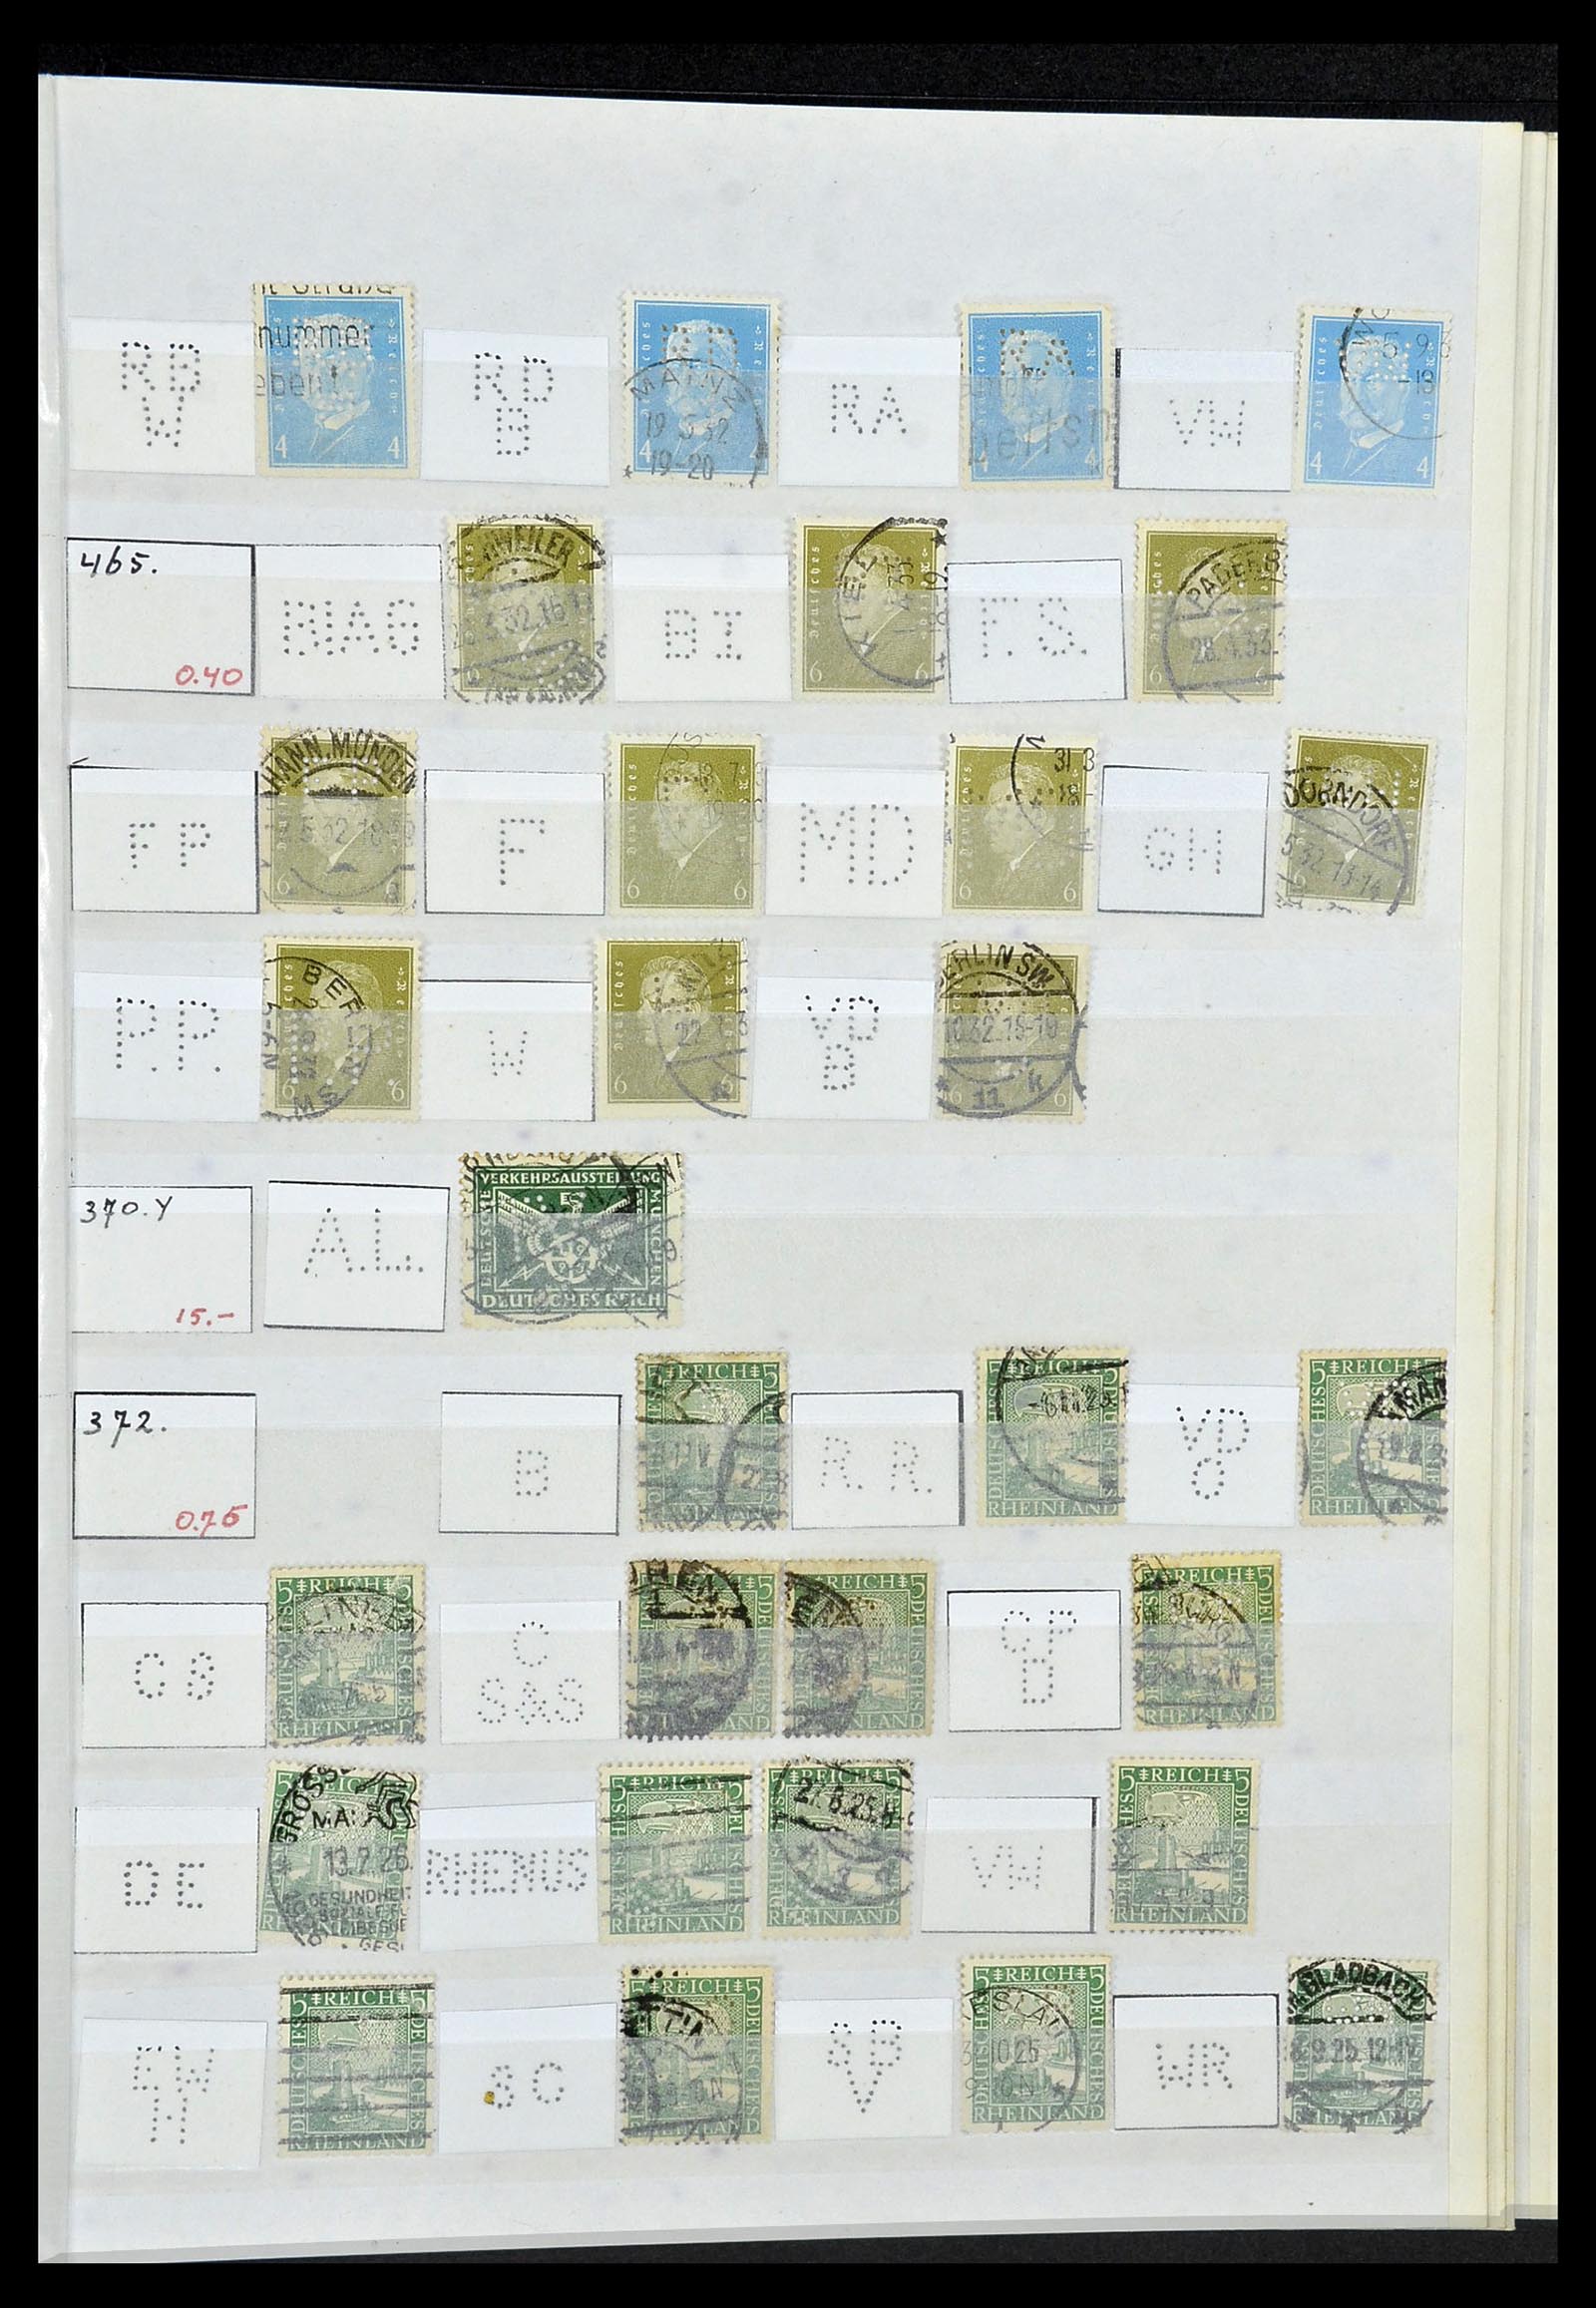 34071 047 - Stamp collection 34071 German Reich perfins 1923-1930.